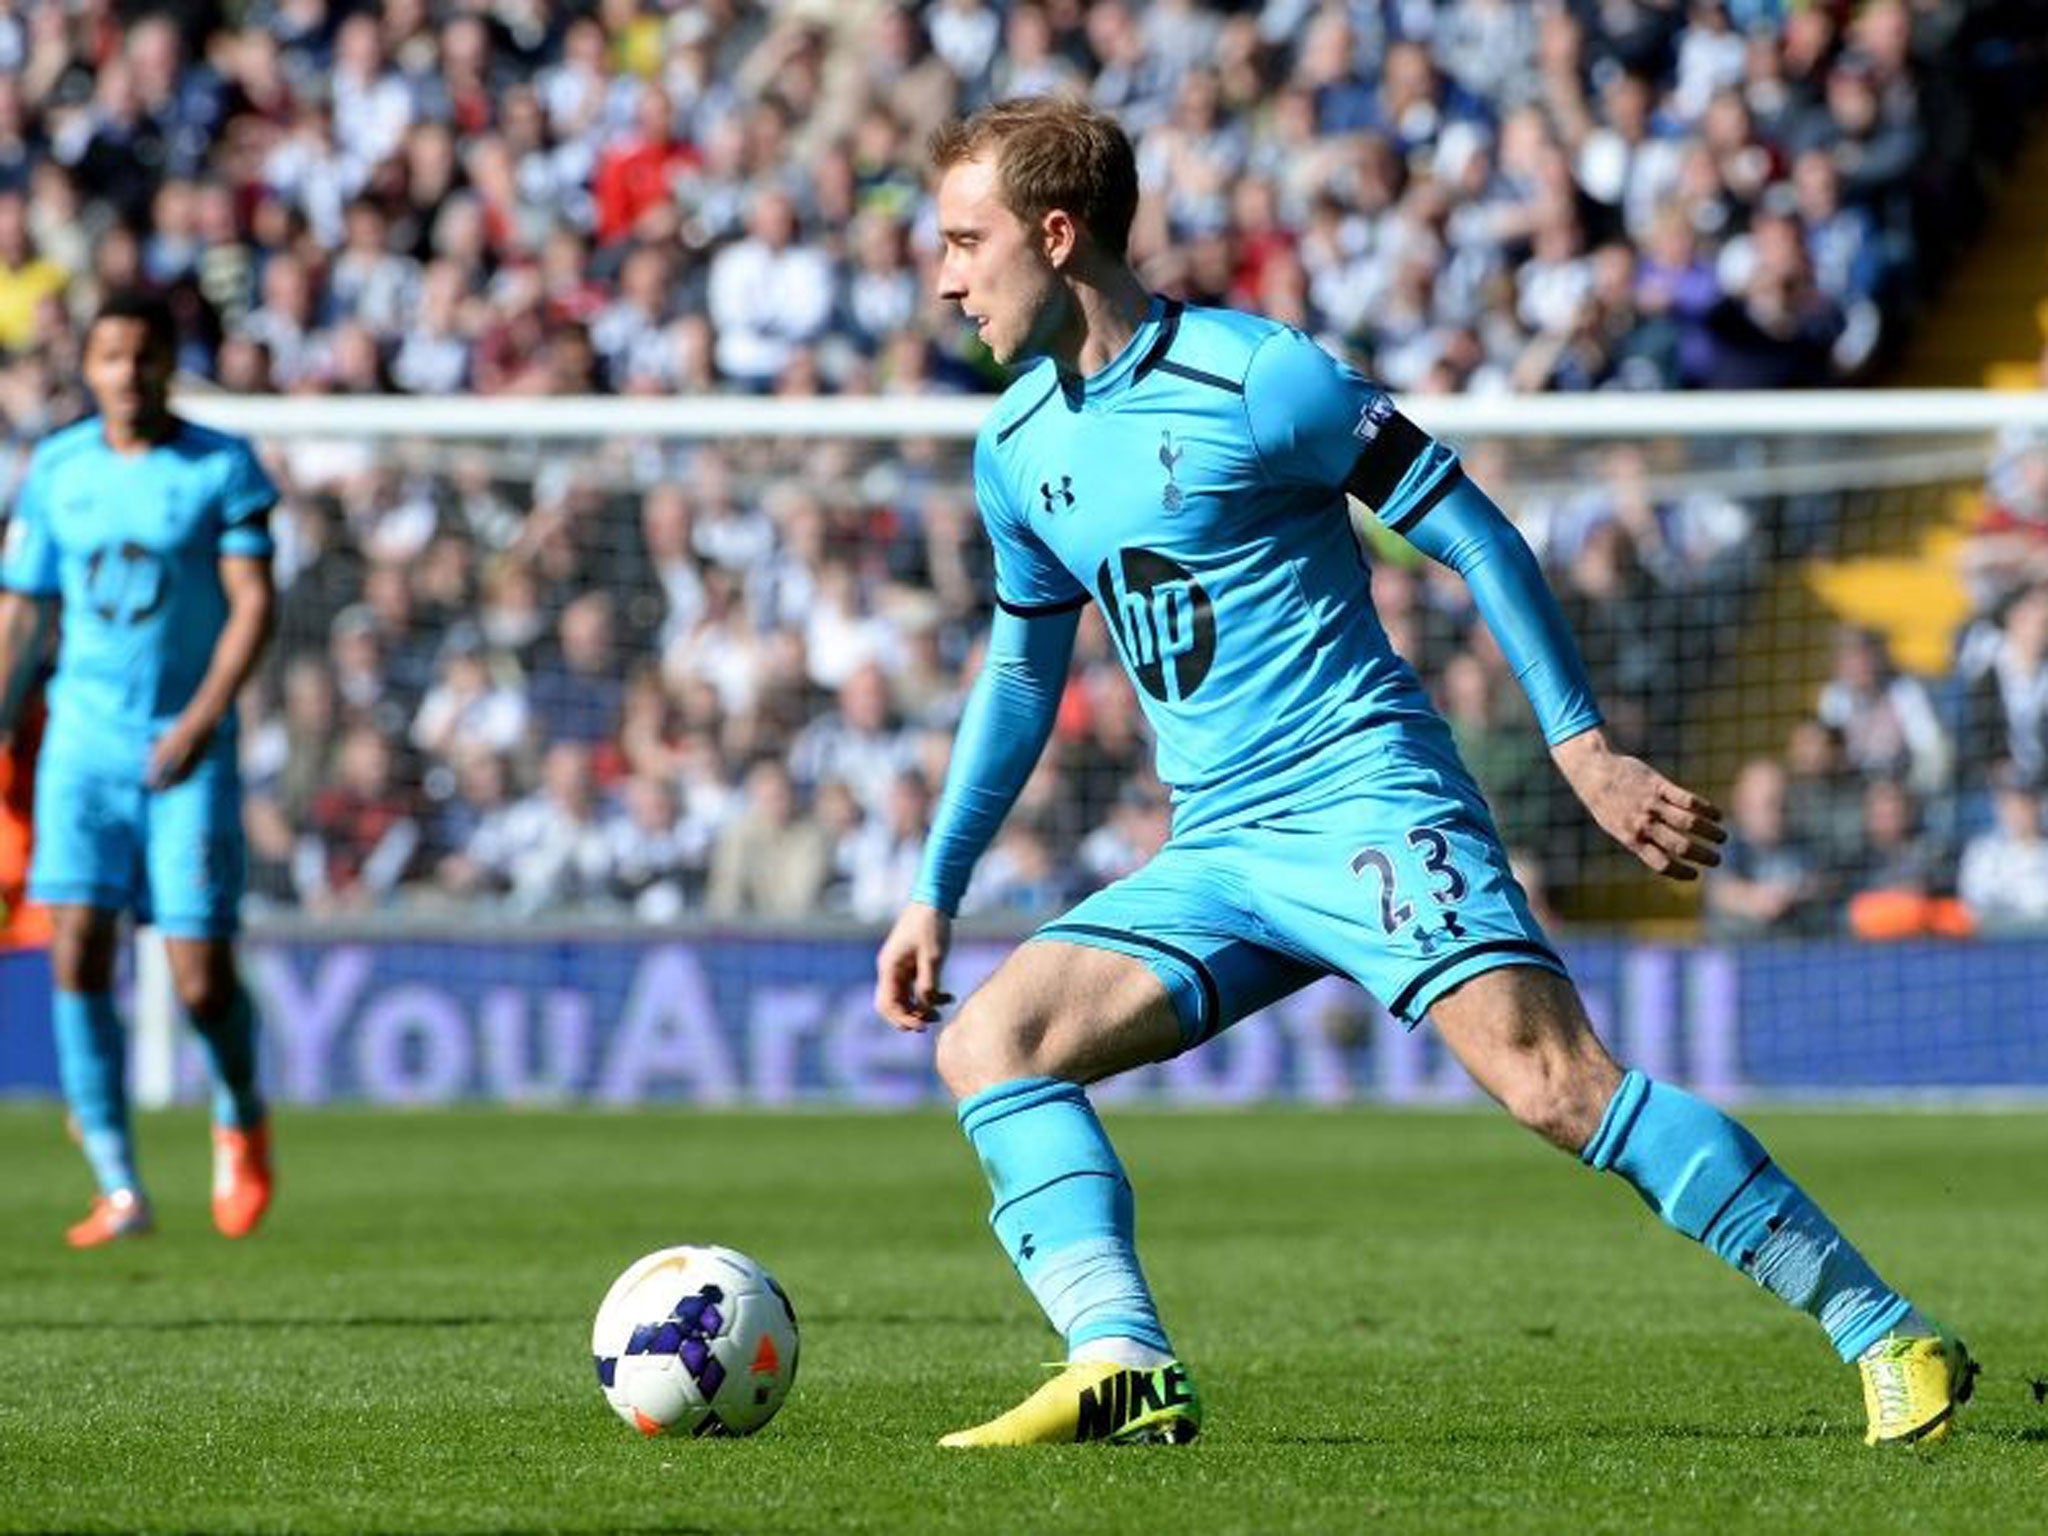 Christian Eriksen is expected to start for Tottenham